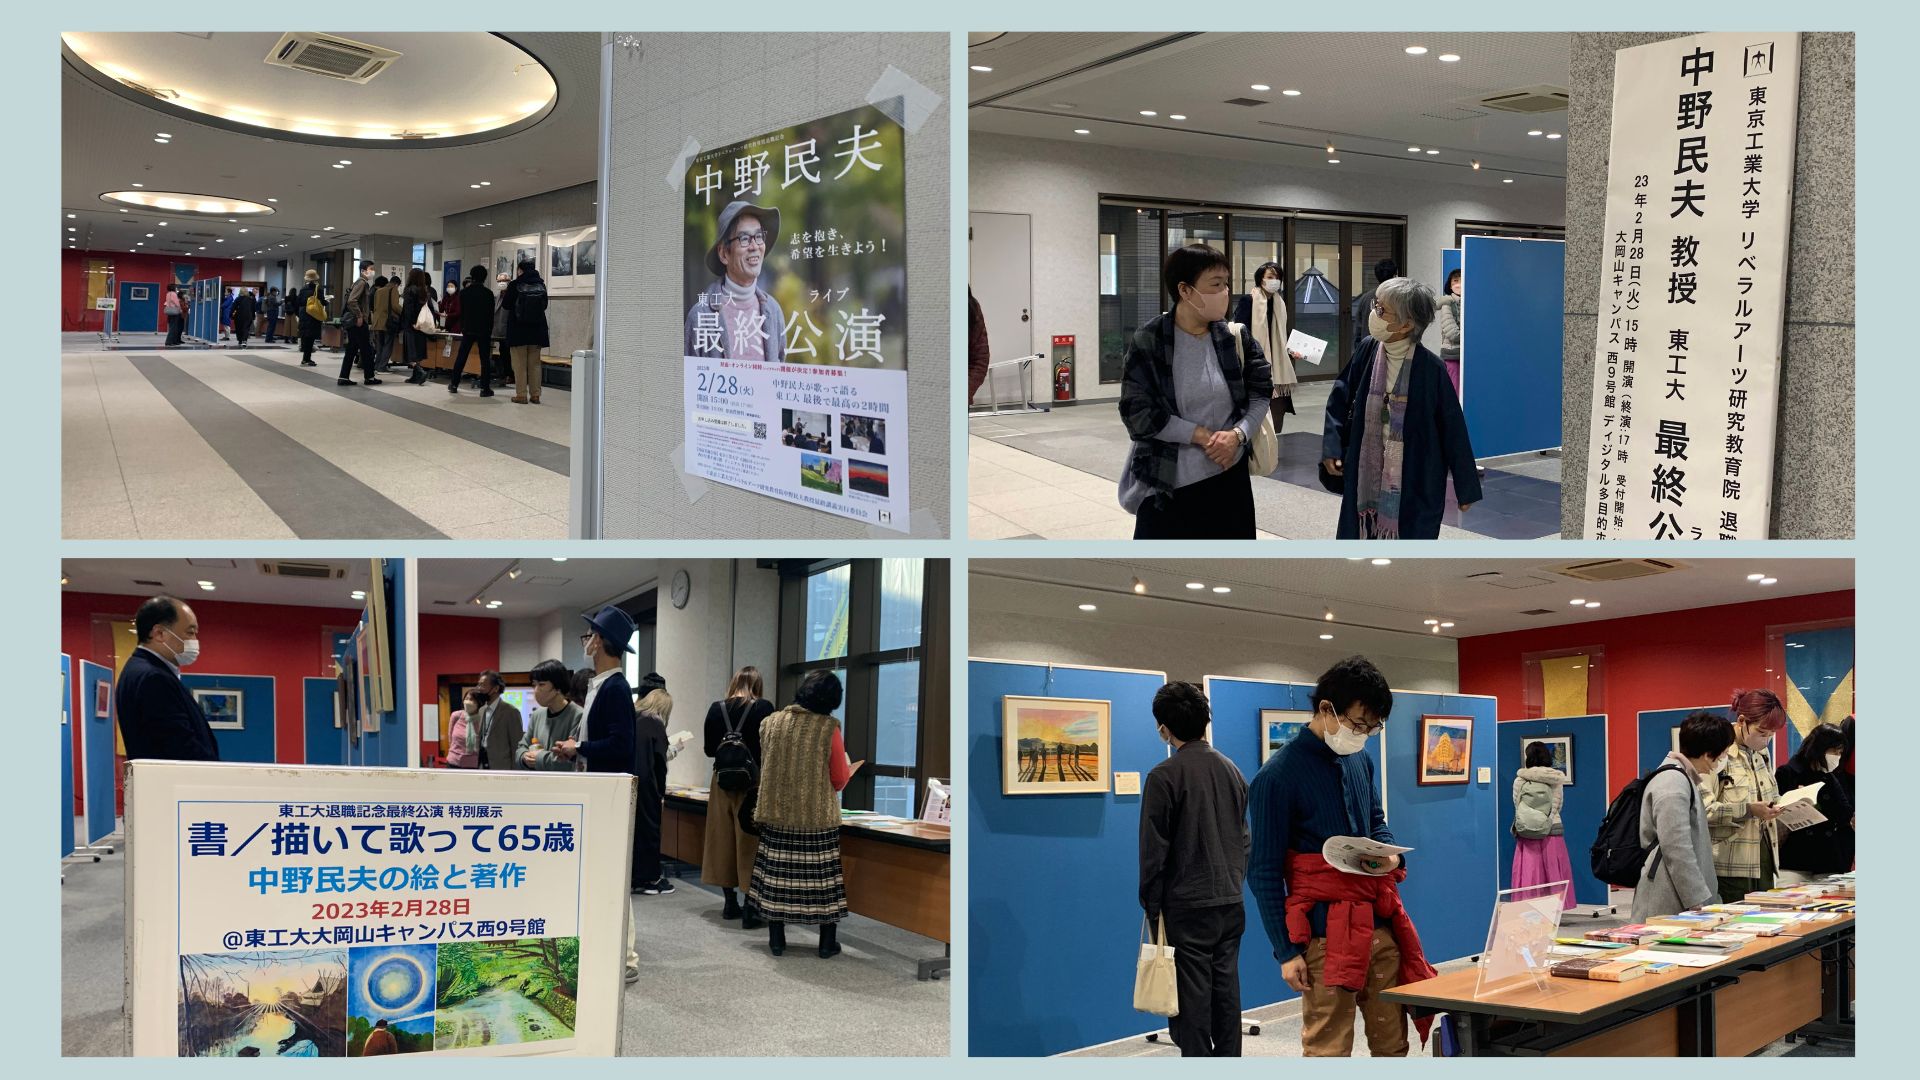 会場入口には、中野先生が描いた数々のアクリル画作品と著作本などを展示